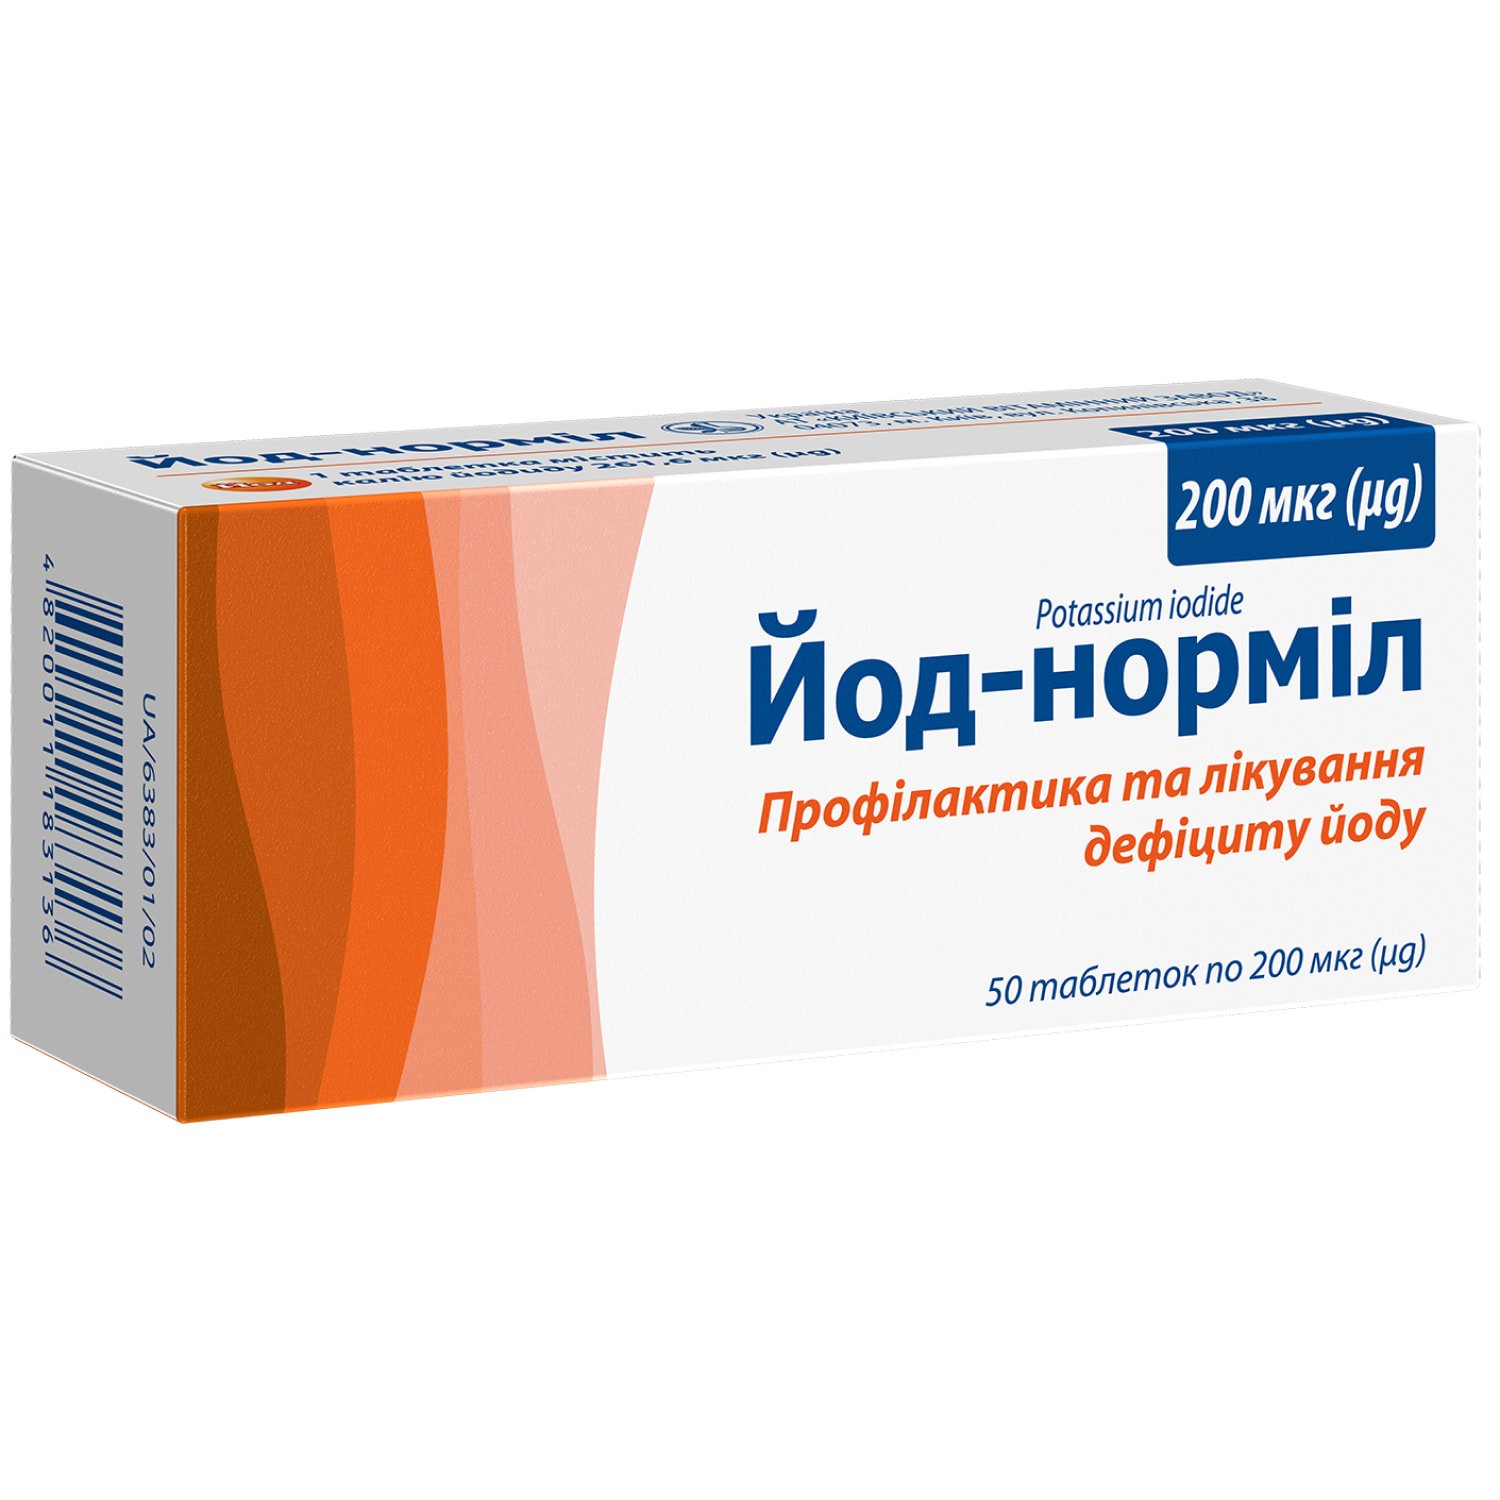 Йод-нормил в таблетках по 200 мкг, 50 шт.: инструкция, цена, отзывы .